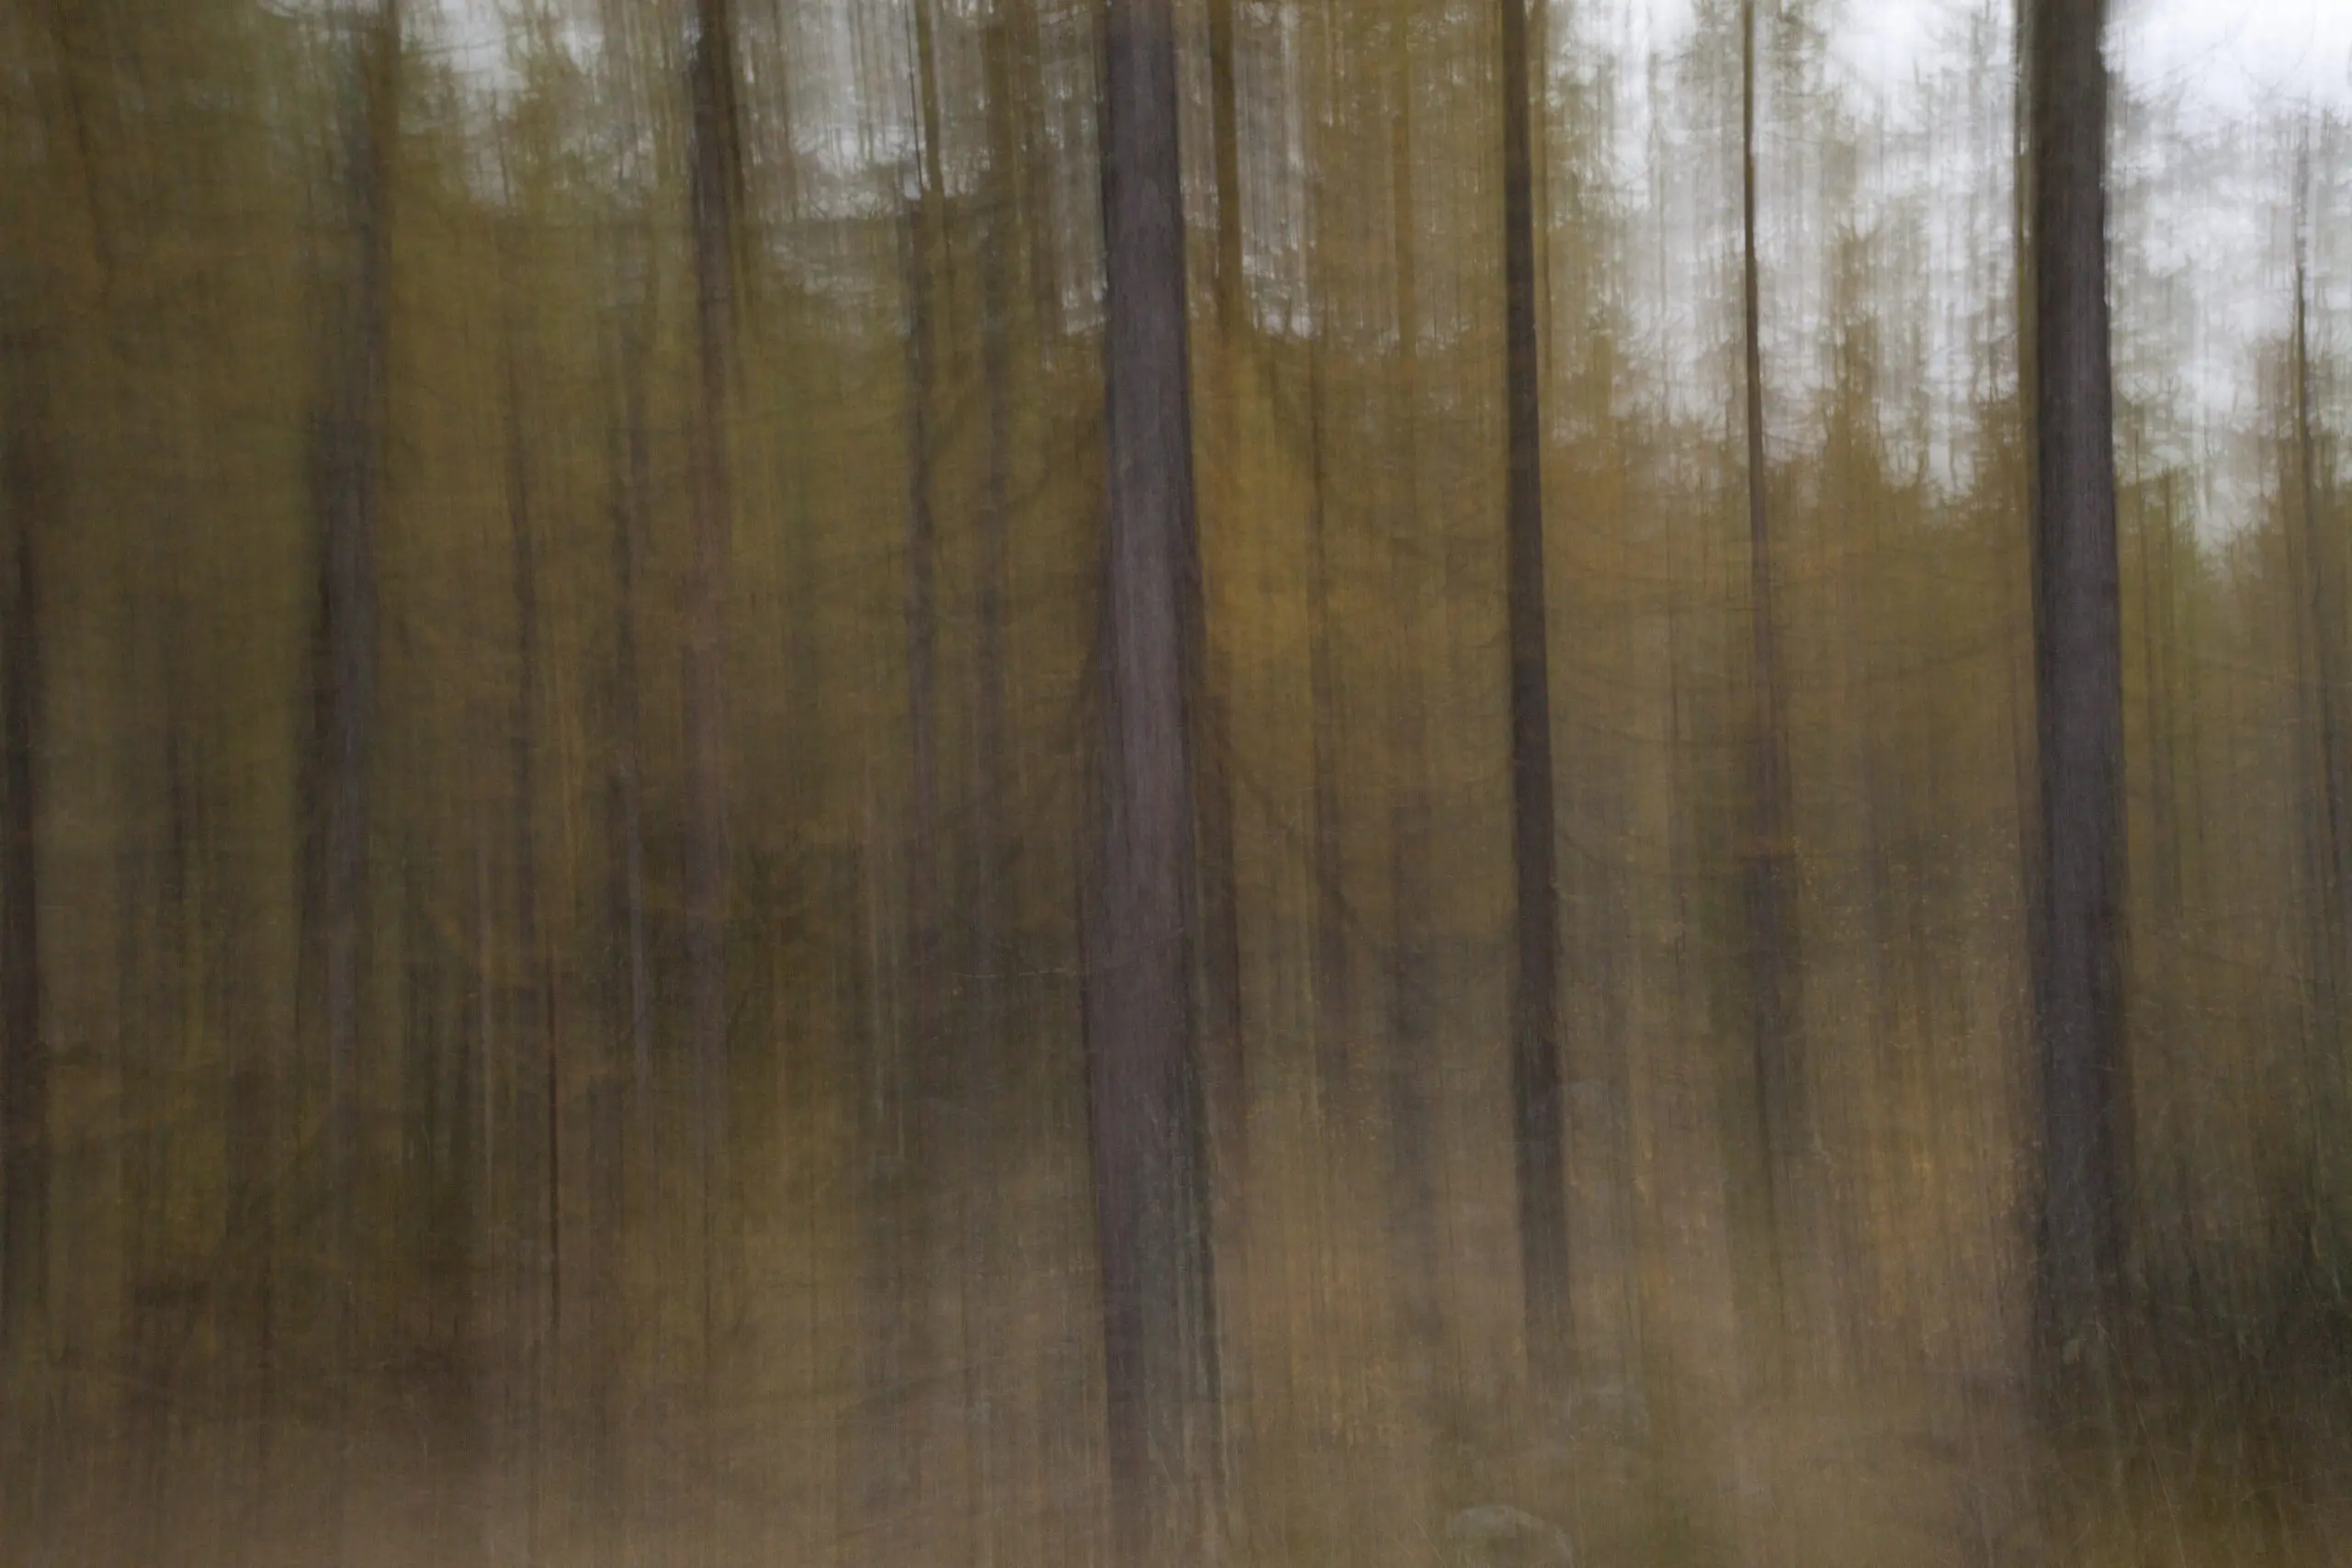 Wandbild (3810) Lärchenwald präsentiert: Abstrakt,Bäume